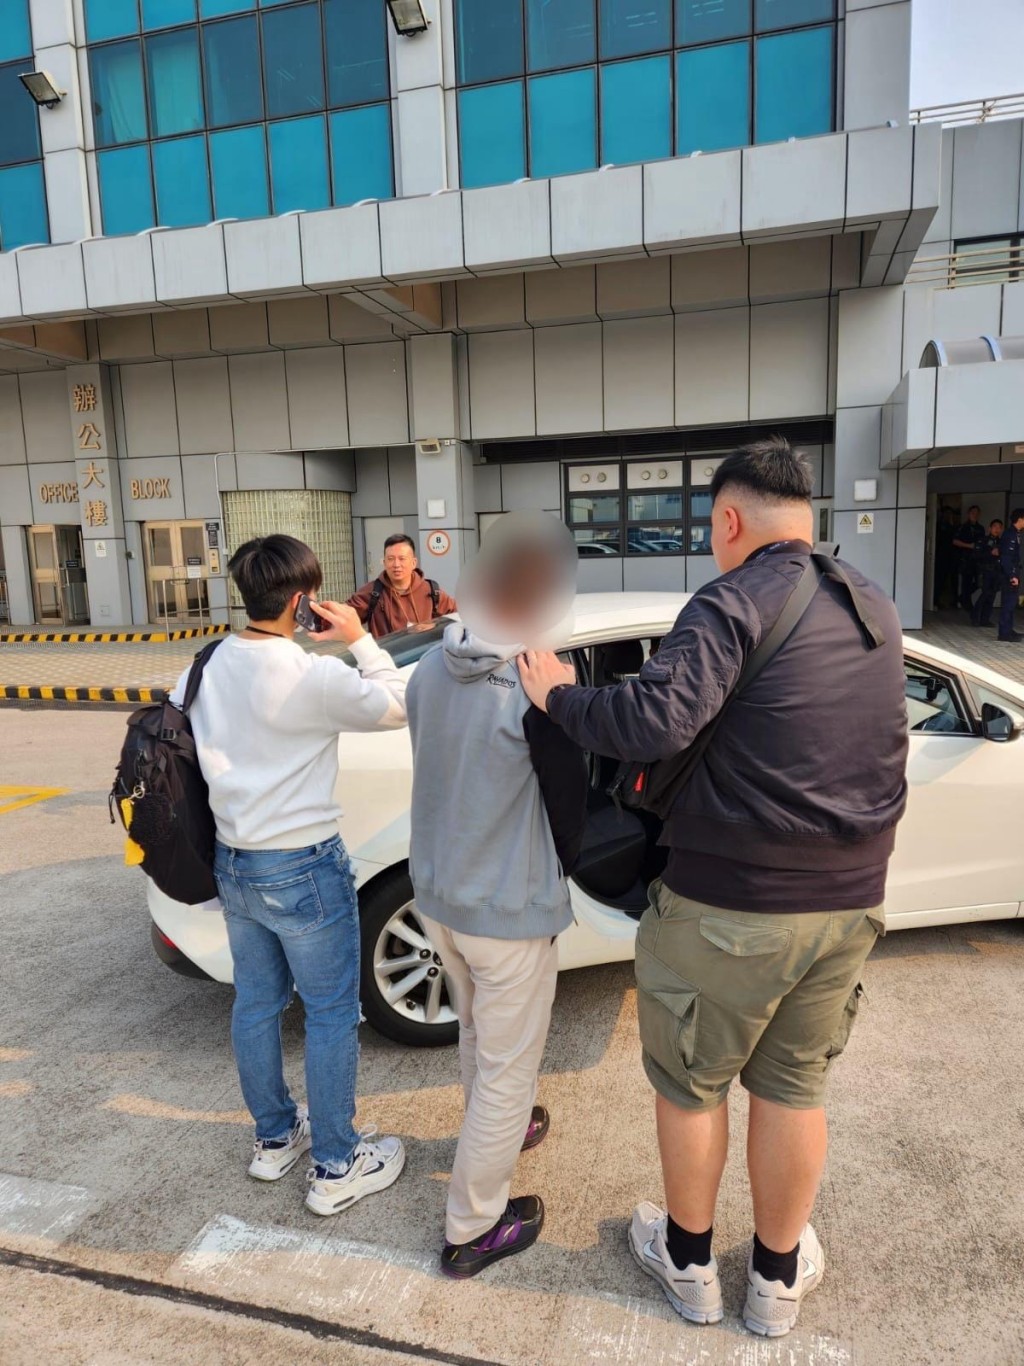 4外籍扒手帮多区作案 窃逾47万元财物 机场逃港之际人赃并获。警方提供